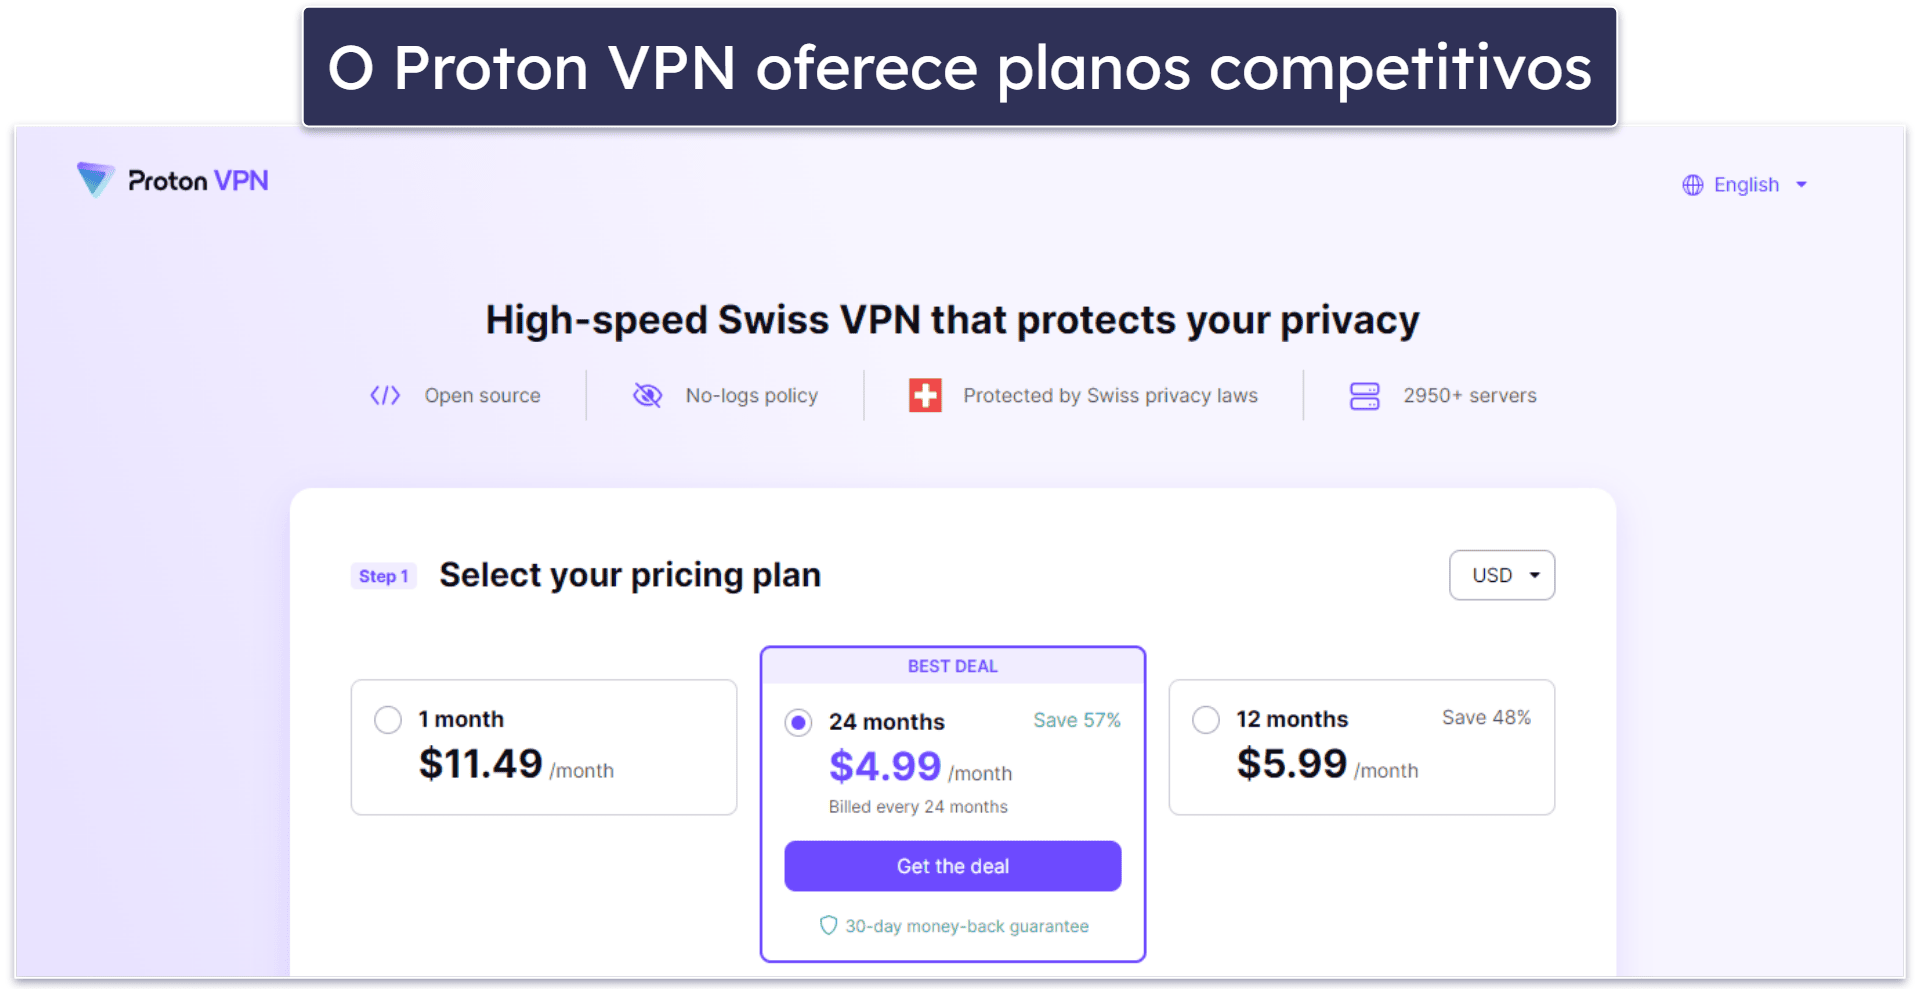 7. Proton VPN — Recursos de segurança e privacidade de última geração